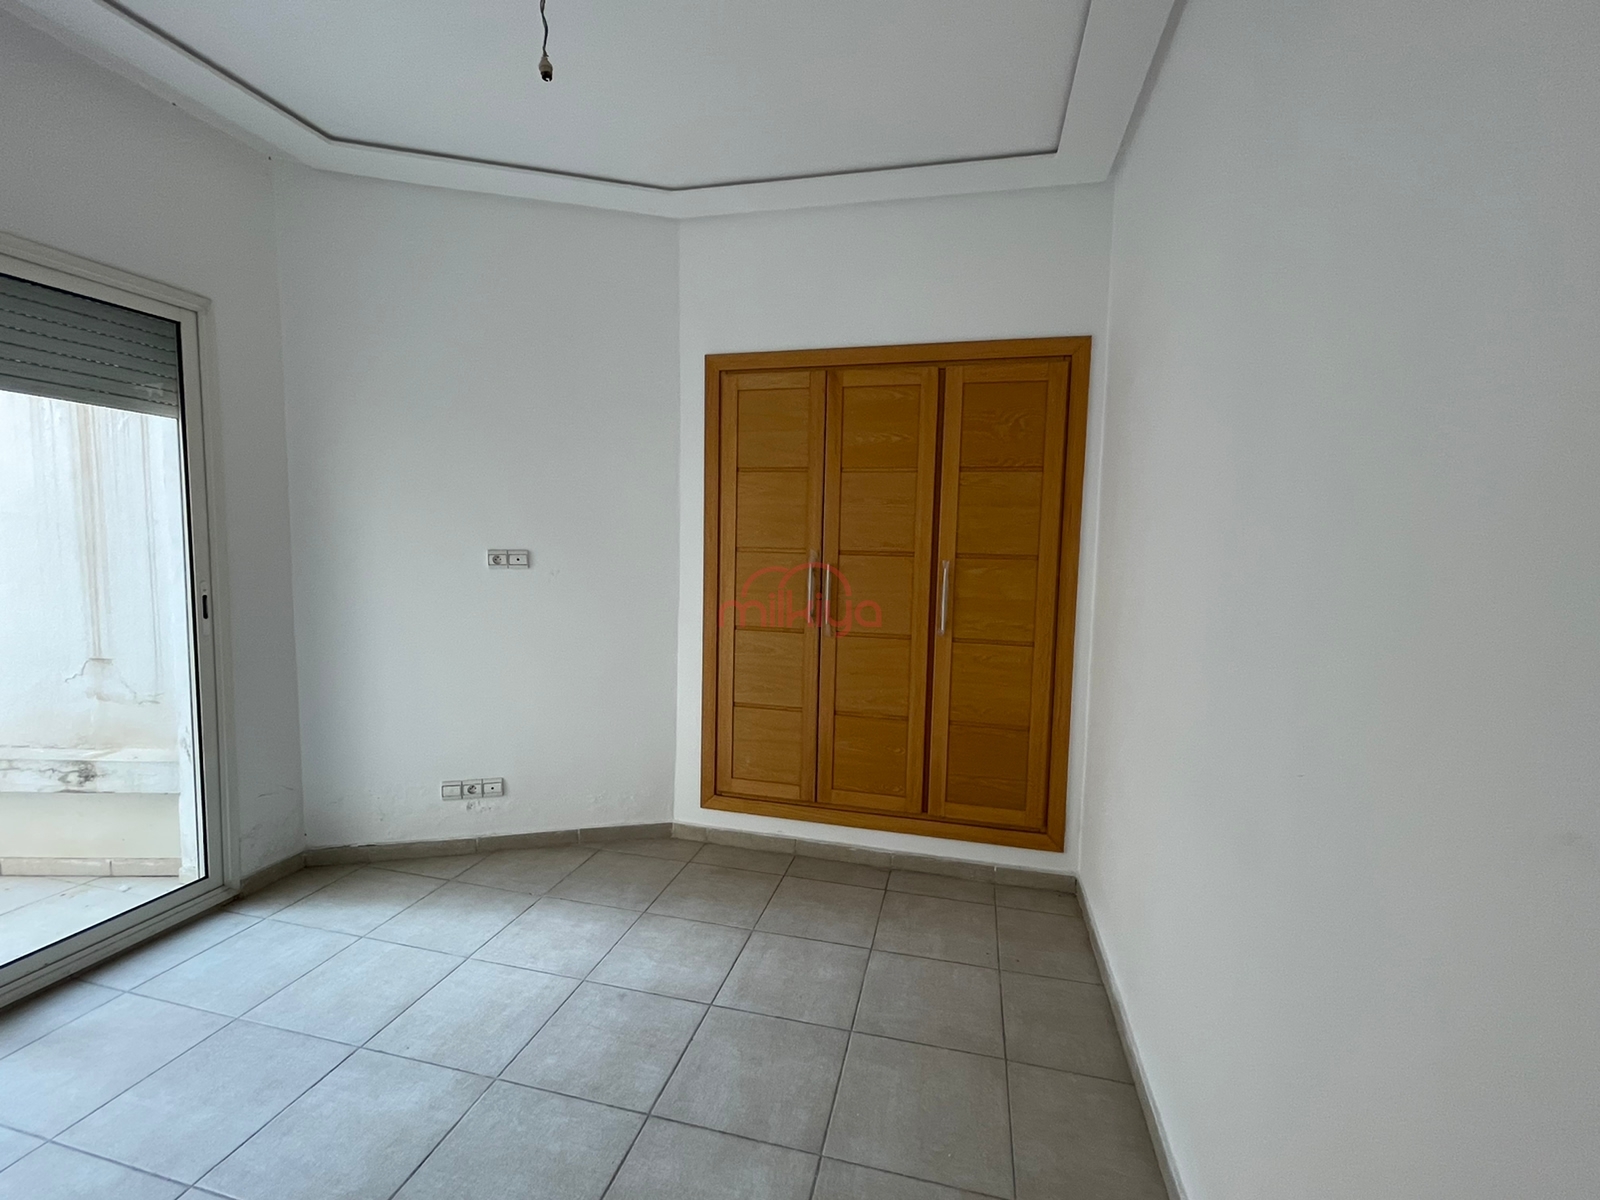 207 - Vente Appartement 62 m² à Casablanca